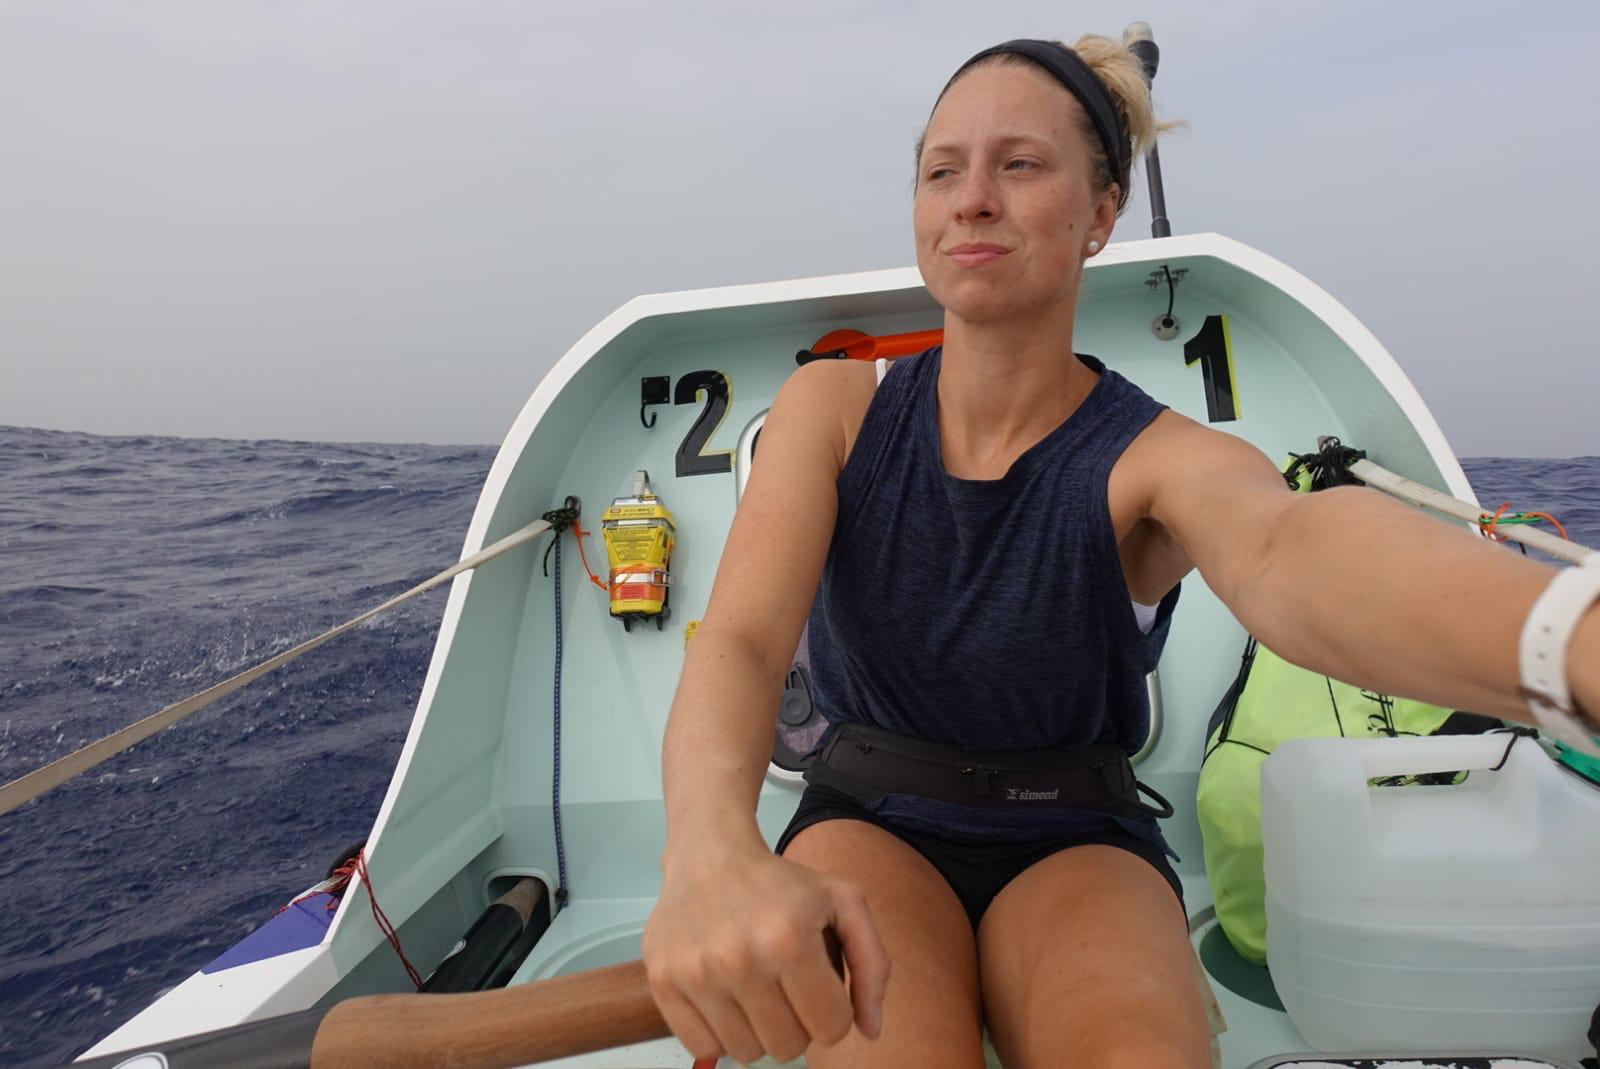 Анна и Кэмерон проведут 60 дней в маленькой лодке, борясь с 12-метровыми волнами, акулами, плохим самочувствием и расписанием, по которому они спят и гребут сменами по два часа.